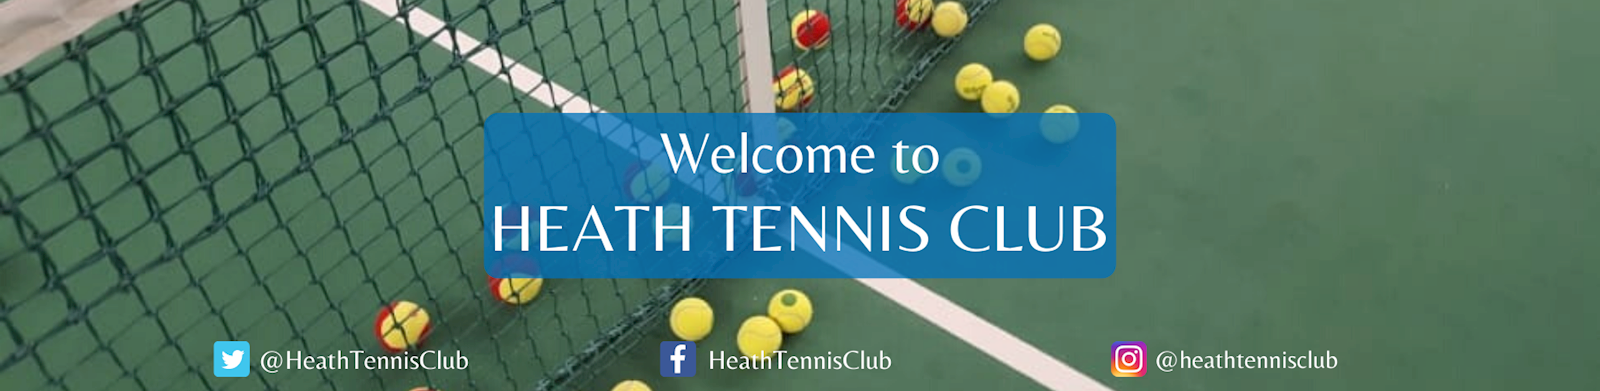 Heath Tennis Club / Home